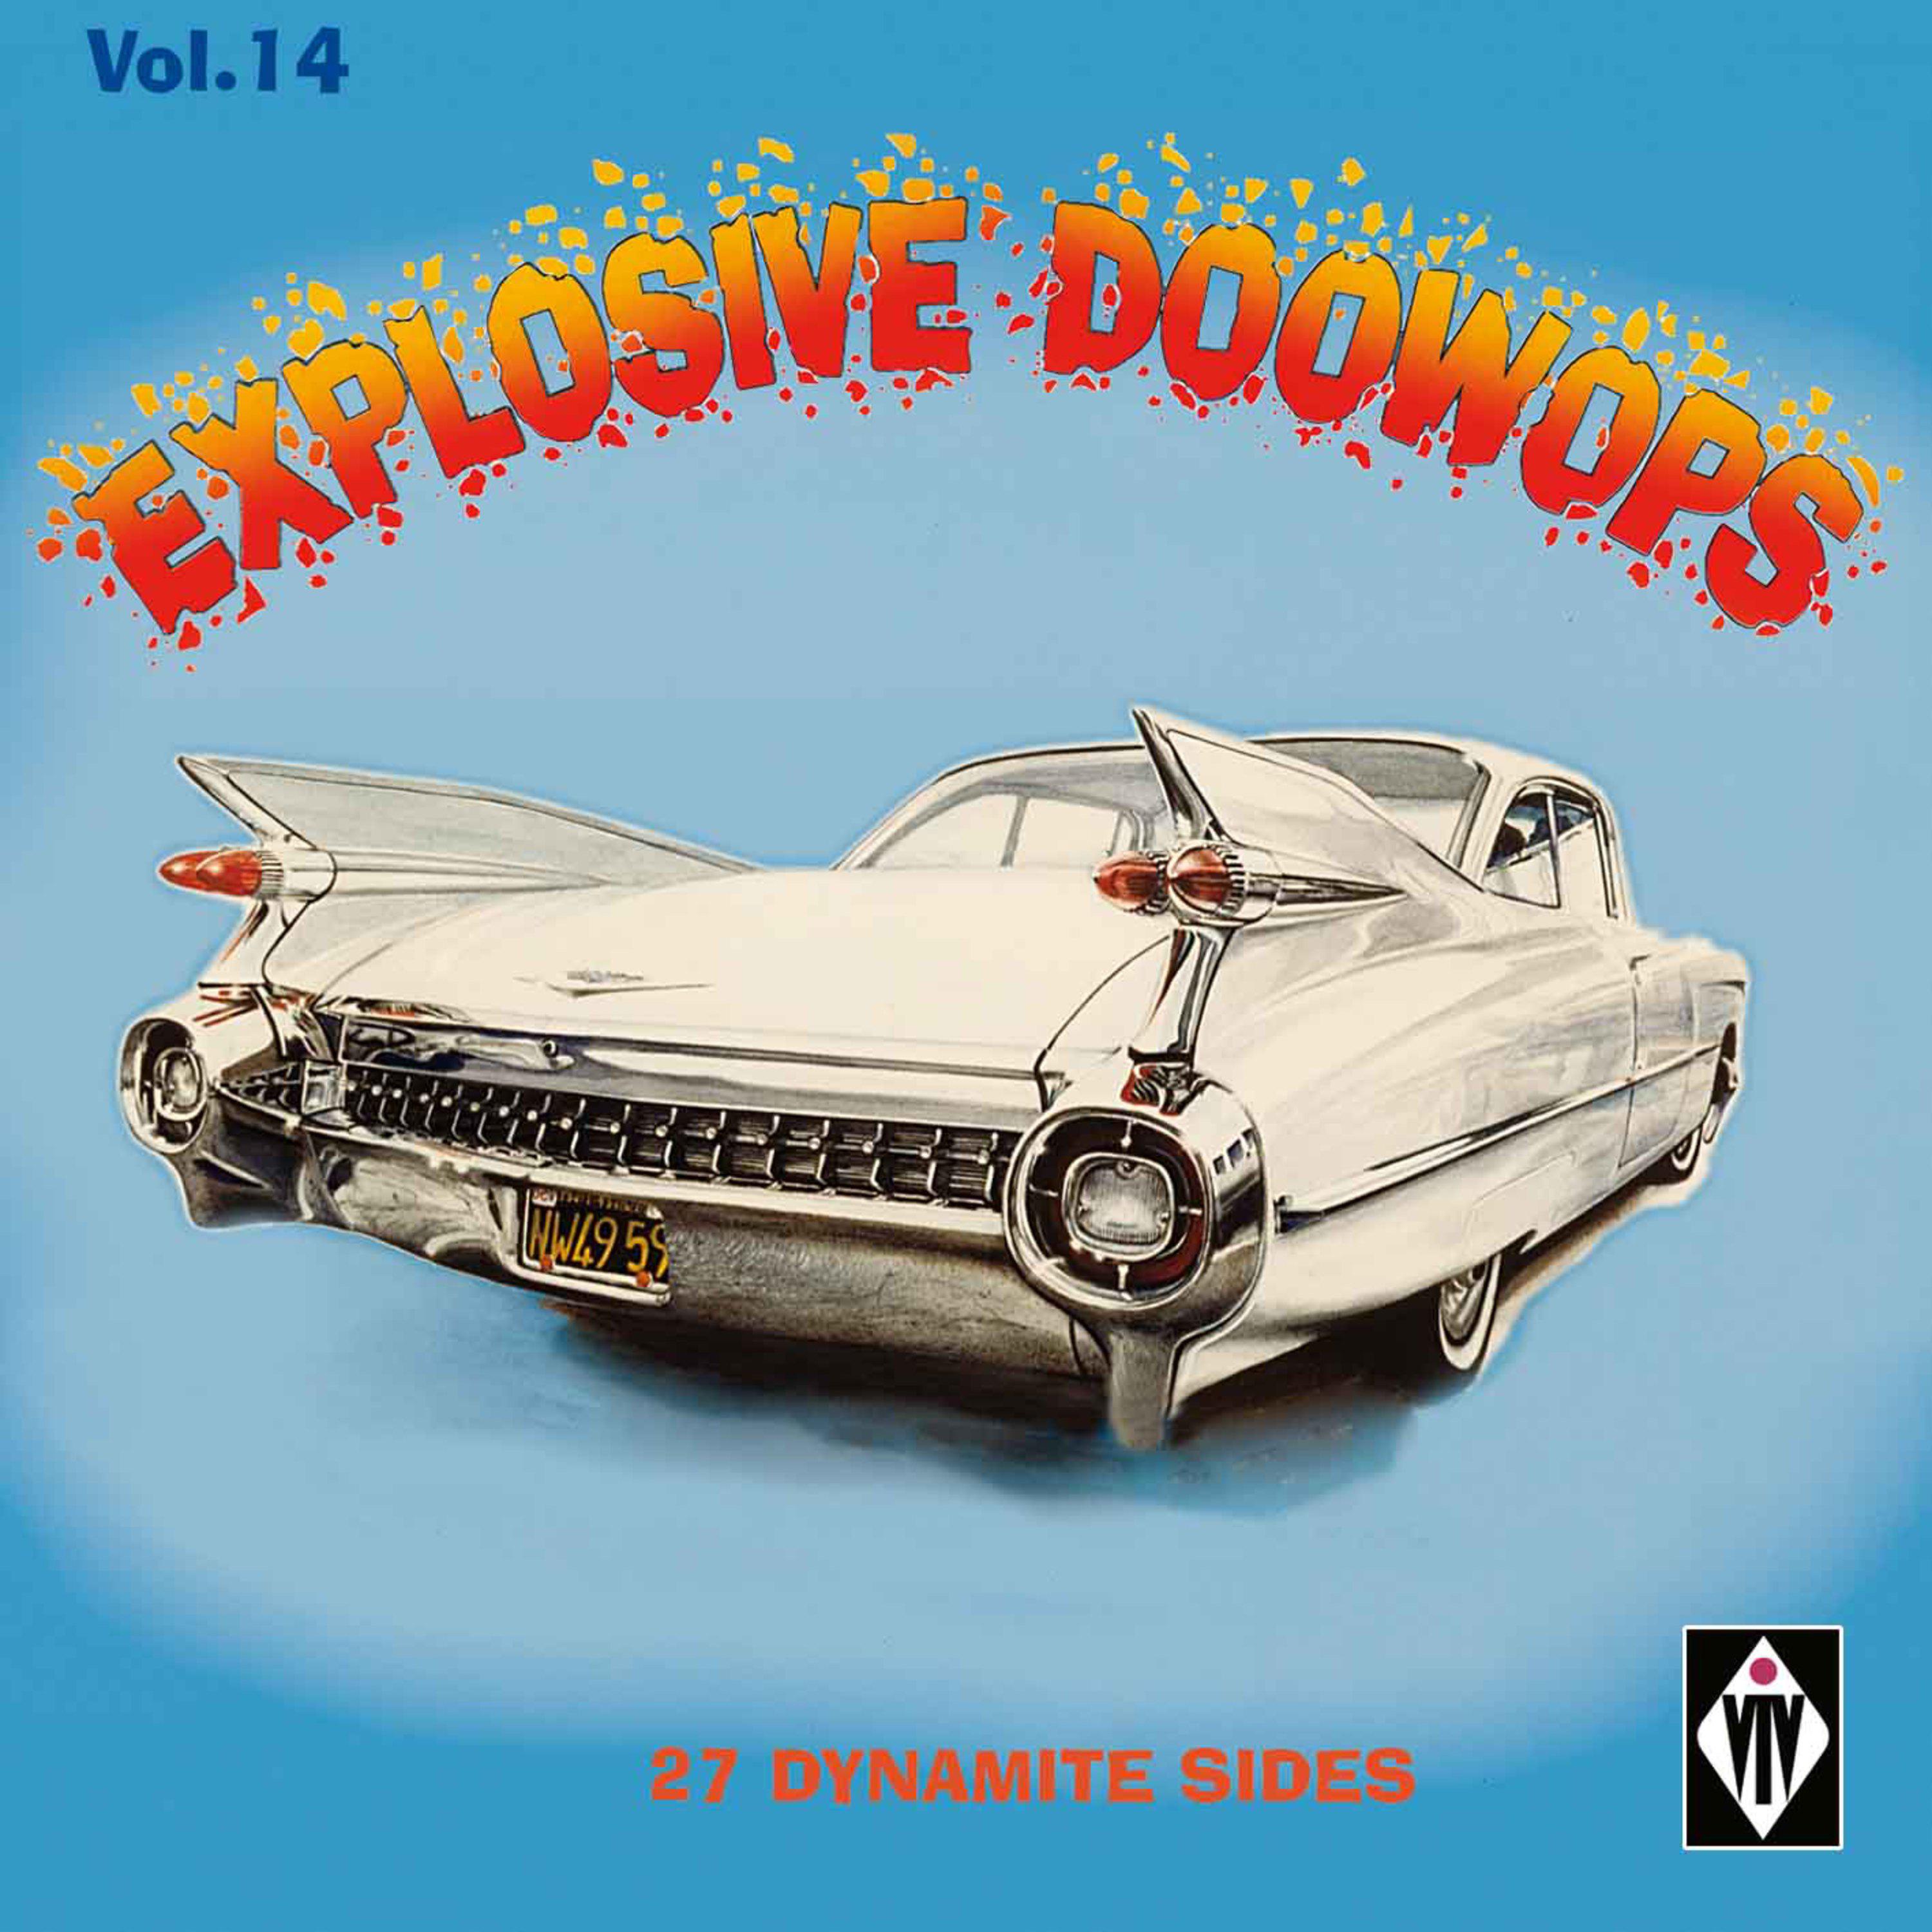 Explosive Doowops, Vol. 14